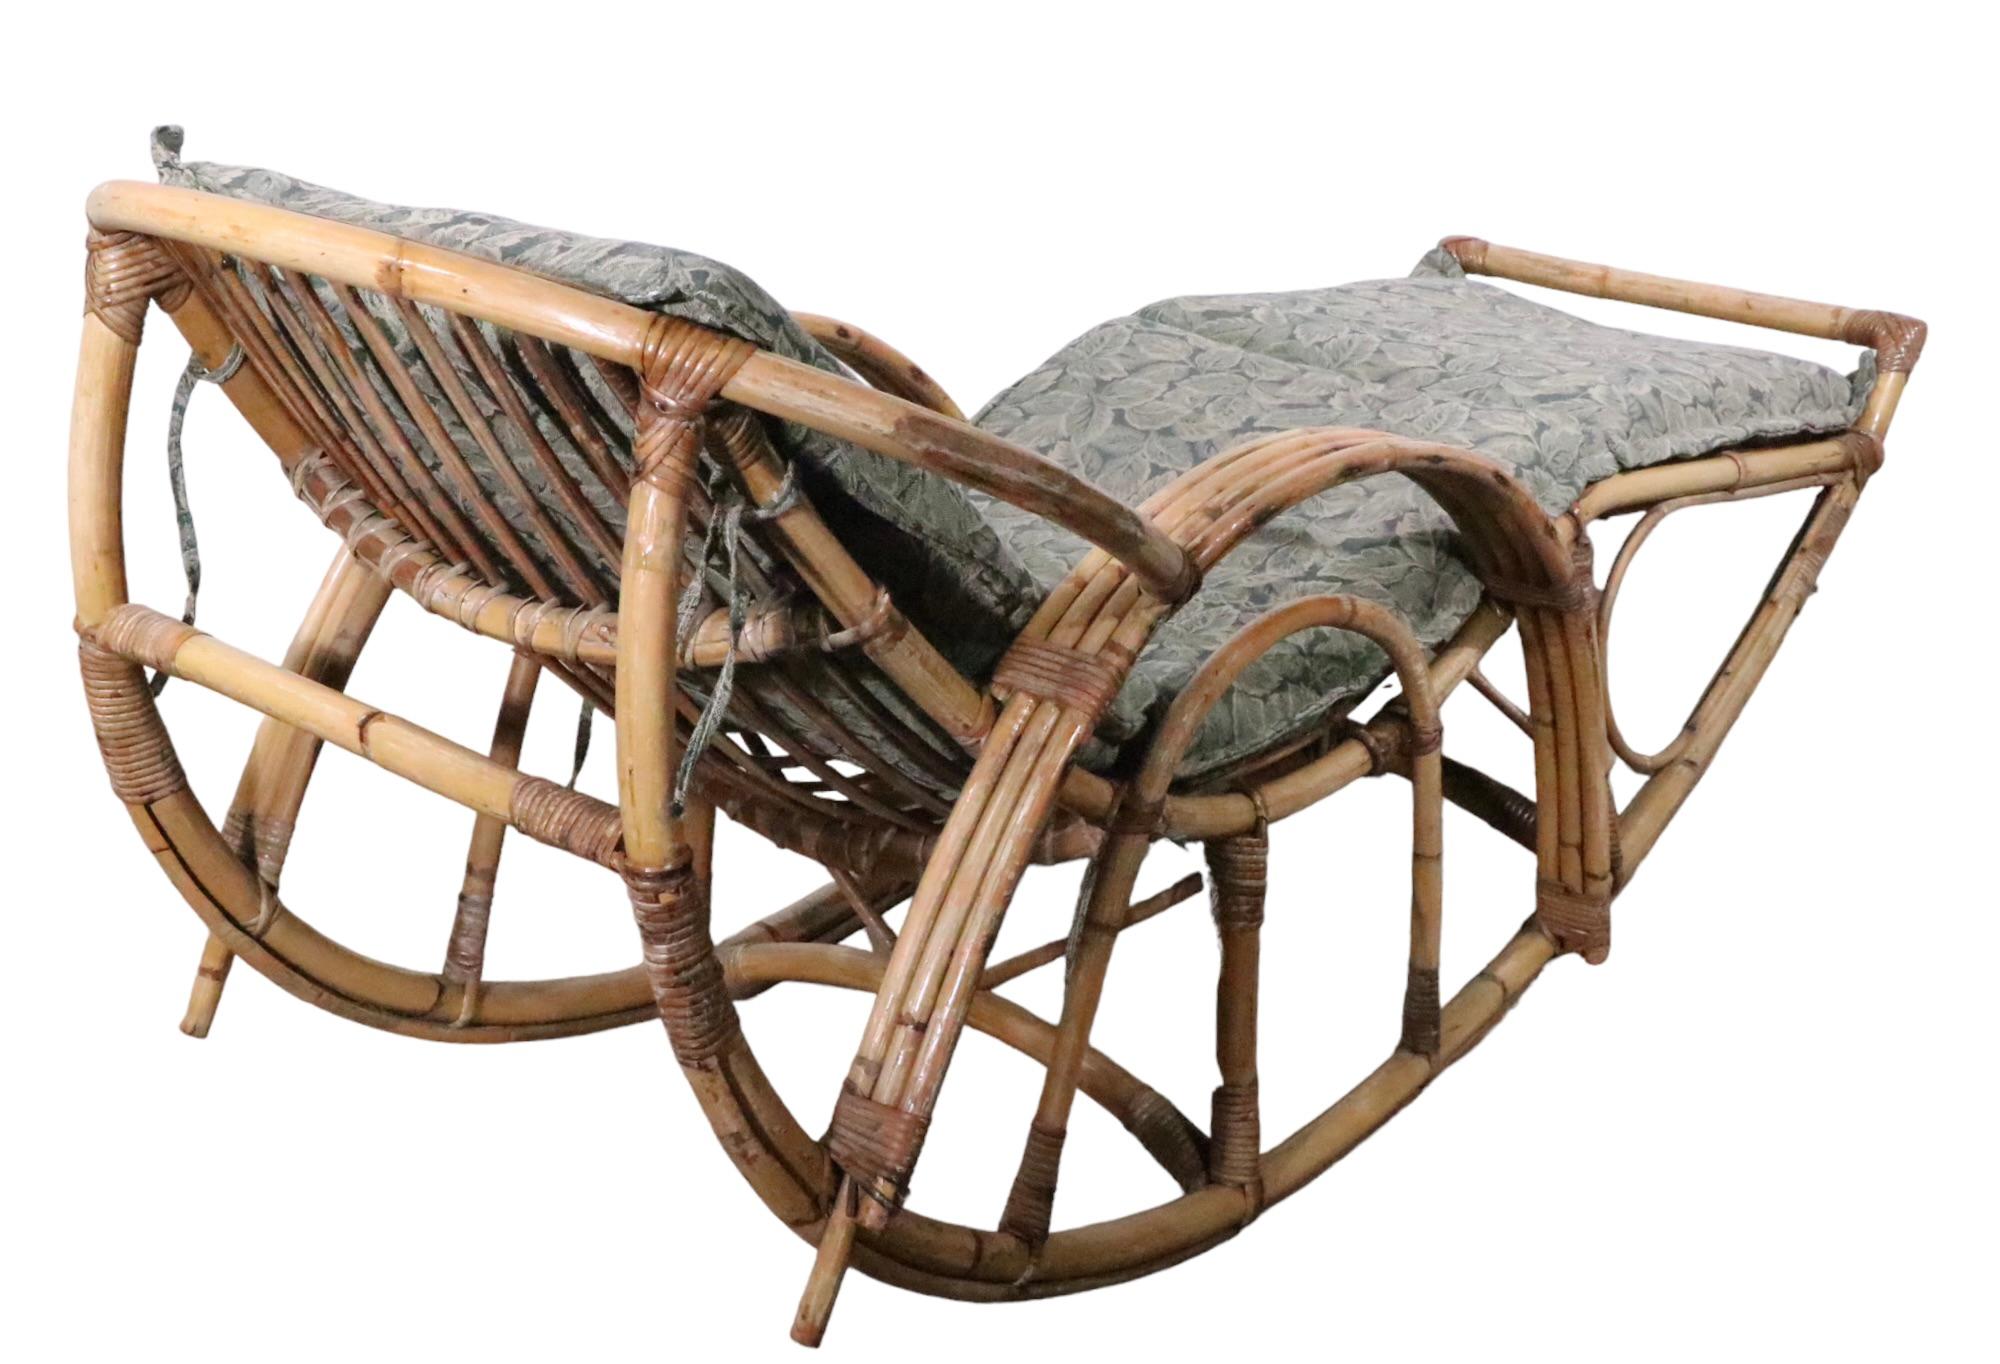 Chaise longue à bascule High Style, en bambou et roseau. La chaise est en bon état d'origine, structurellement saine et robuste, elle présente une usure cosmétique de la finition. Il est livré avec le coussin illustré, bien qu'il ne soit